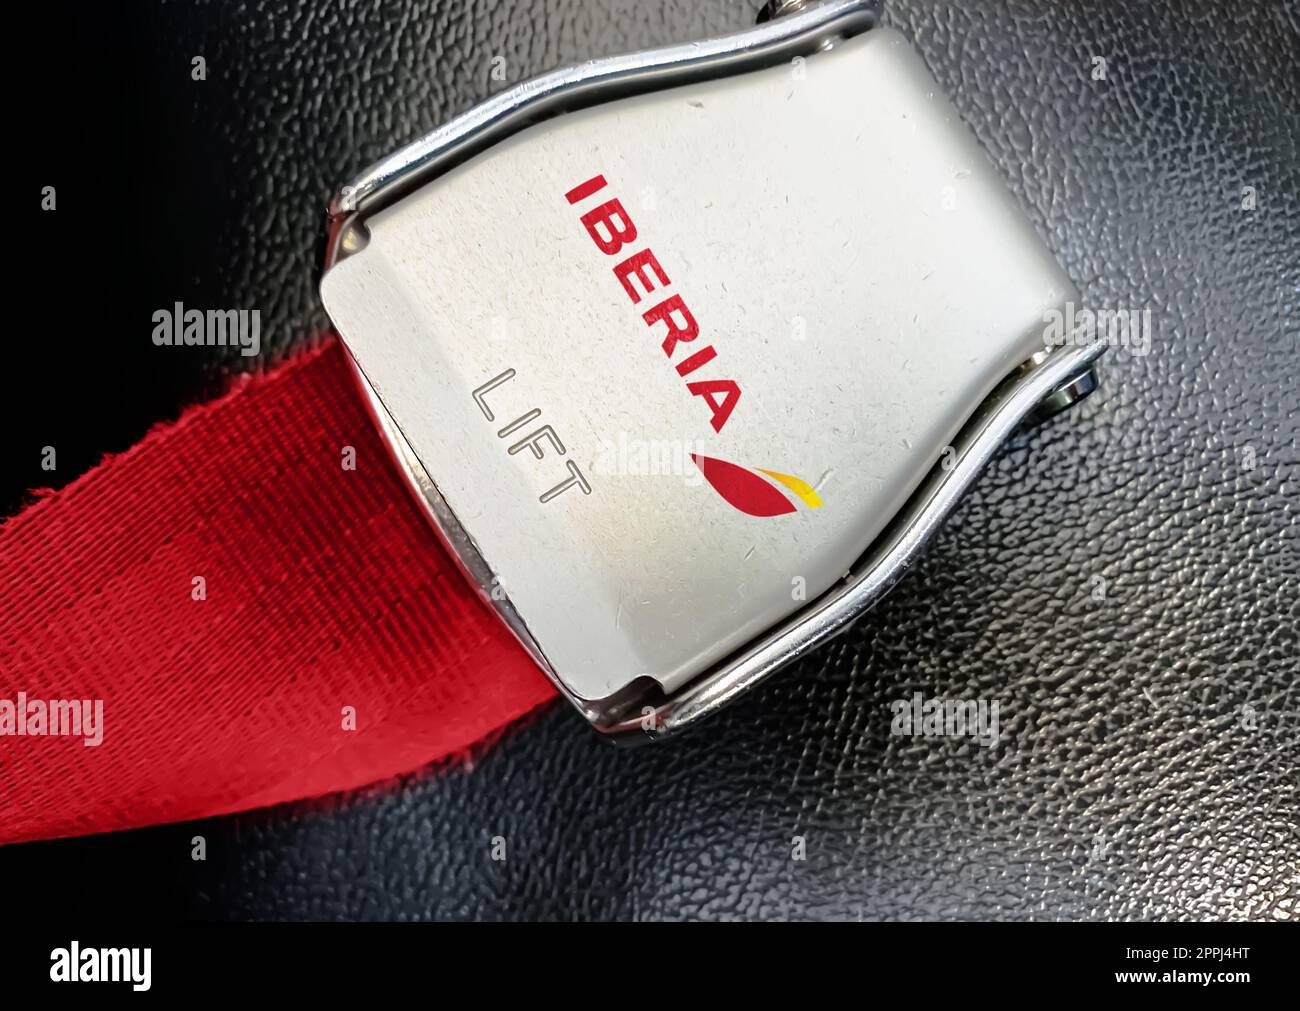 Dettaglio della fibbia della cintura di sicurezza con il logo Iberia su un sedile vuoto Foto Stock